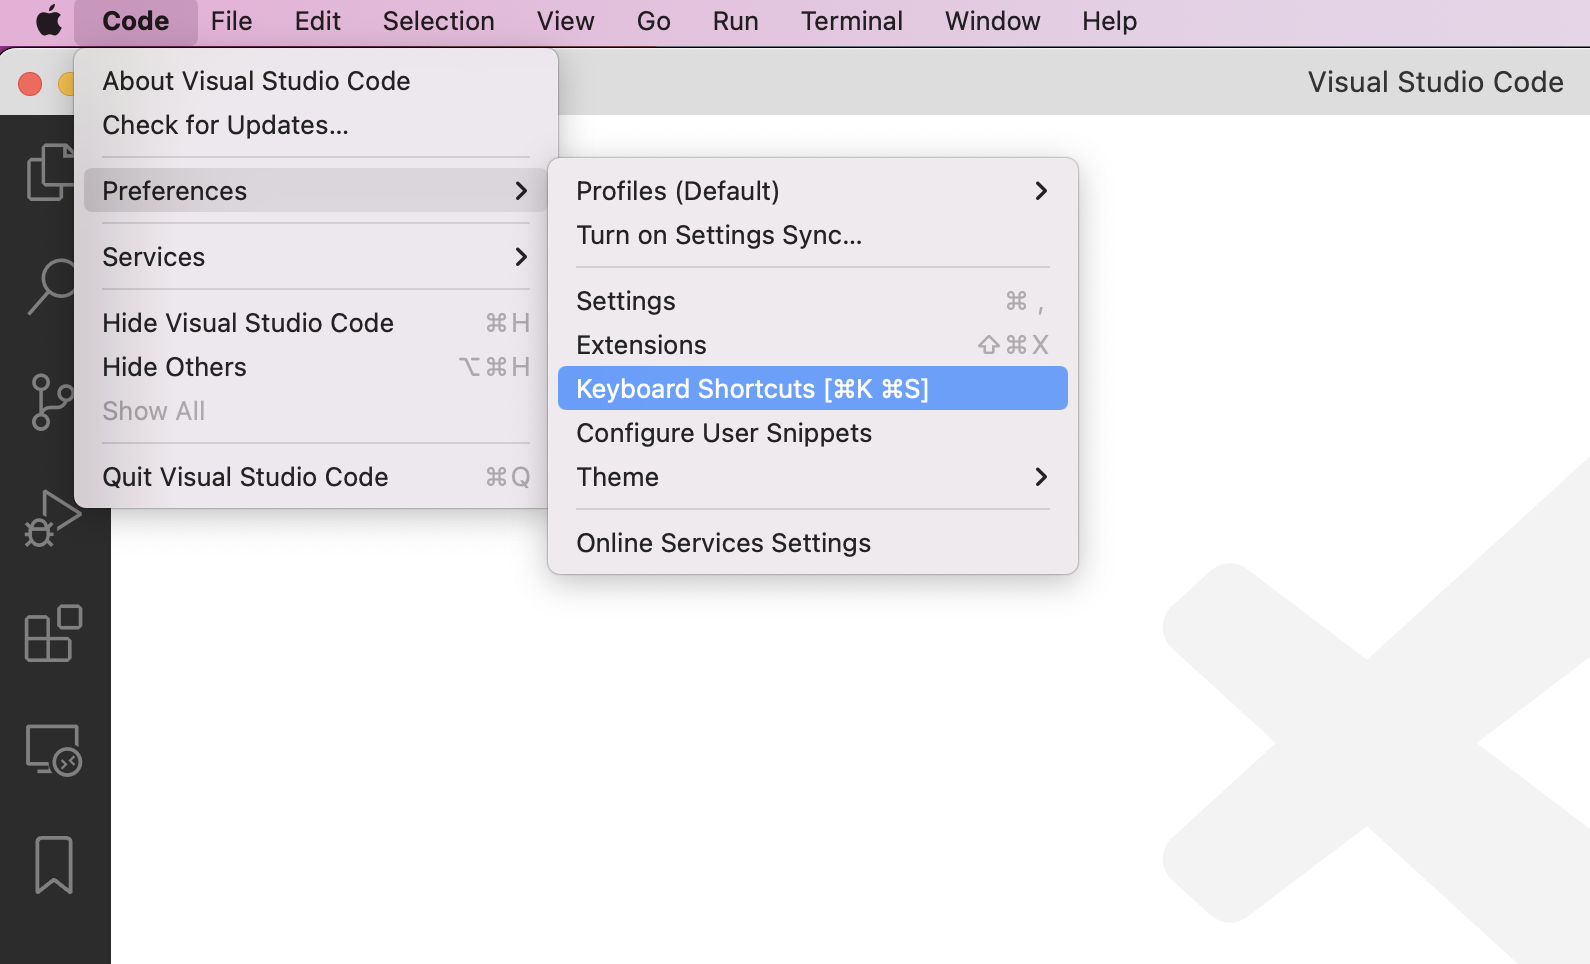 Visual Studio Code 键盘快捷方式的屏幕截图